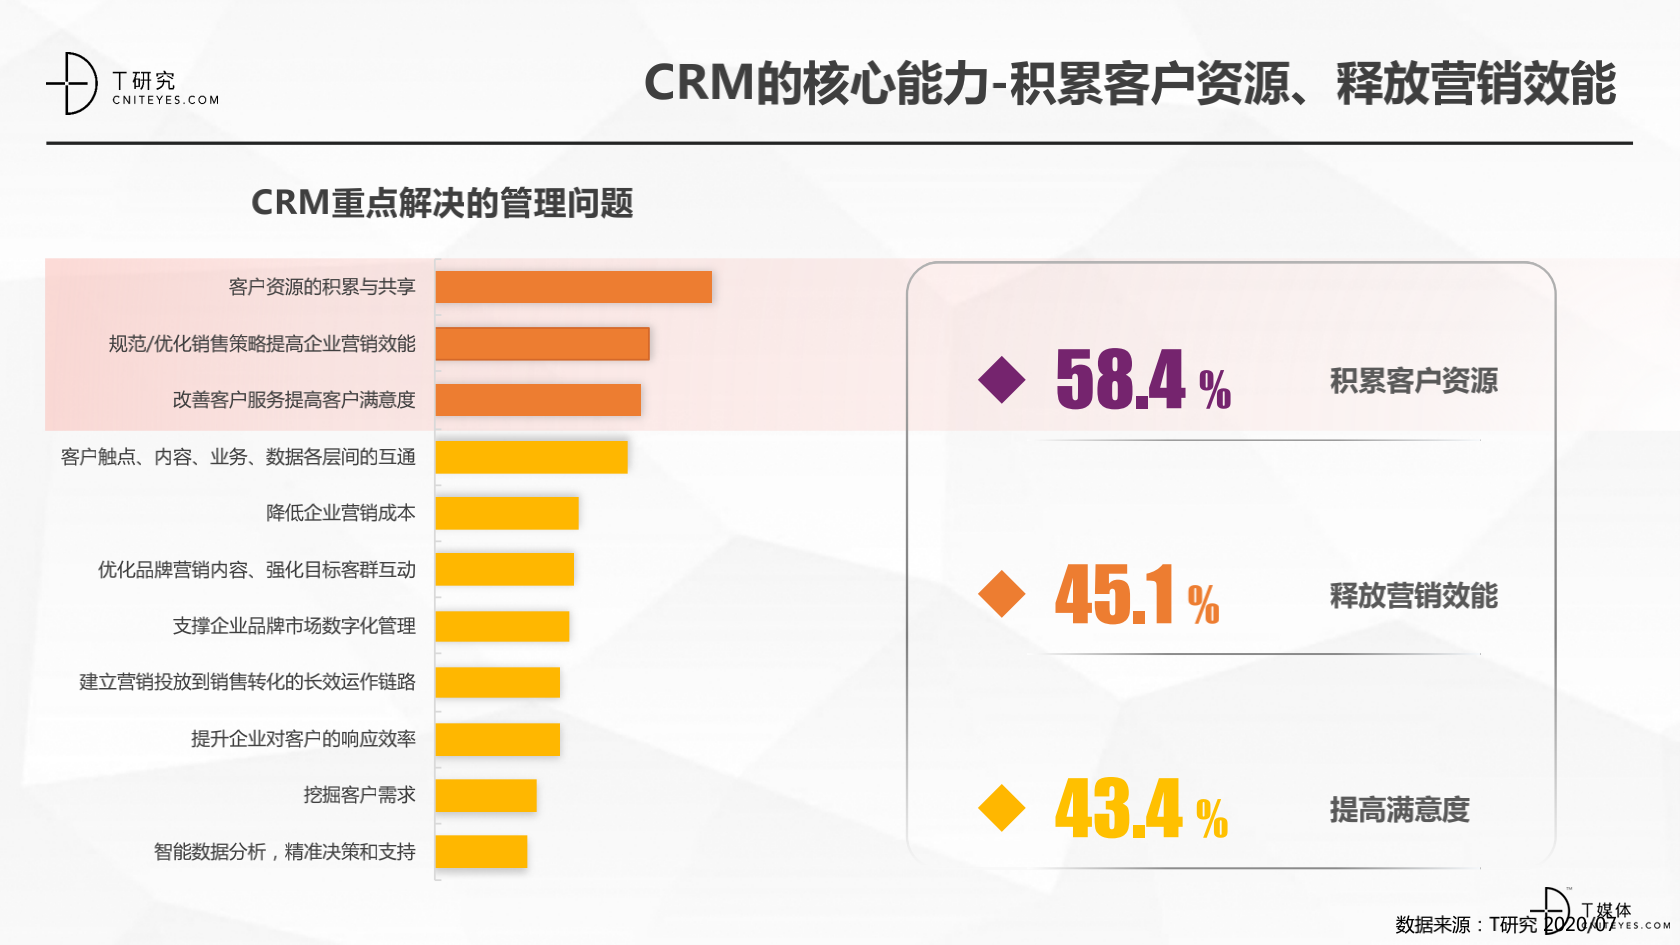 2_2020中国CRM指数测评报告v1.5_06.png